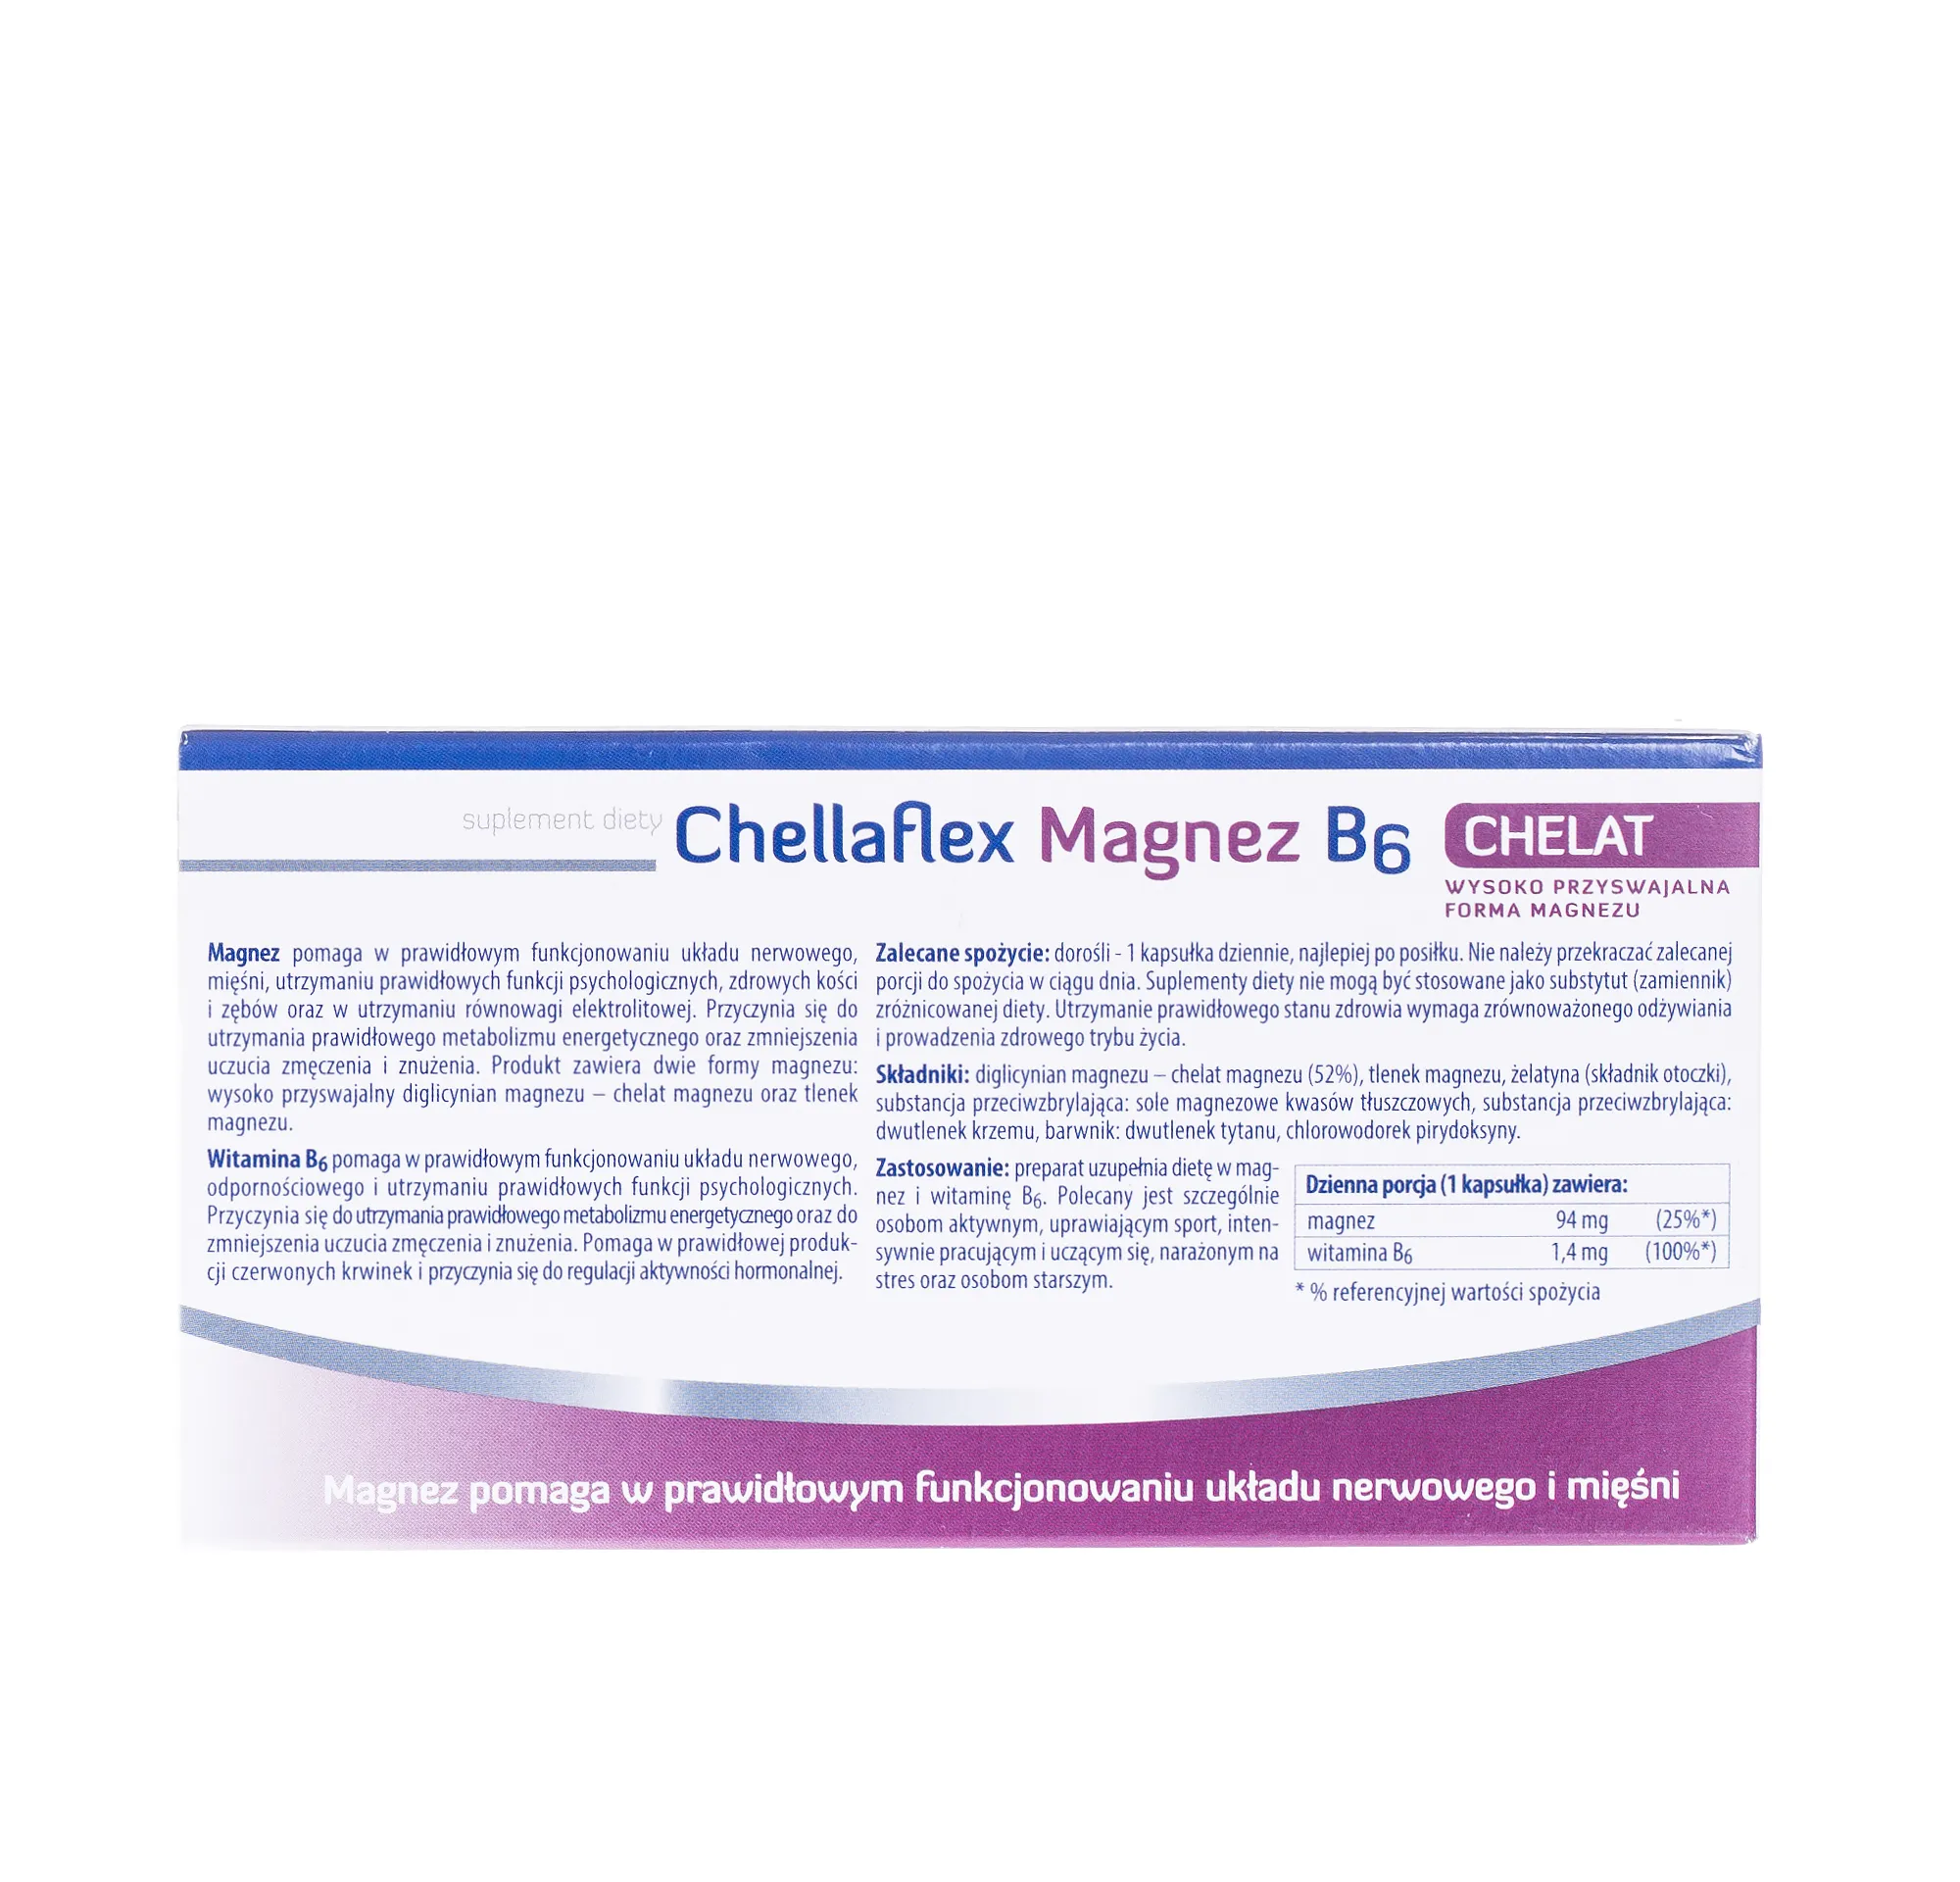 Chellaflex Magnez B6, suplement diety, 36 kapsułek 